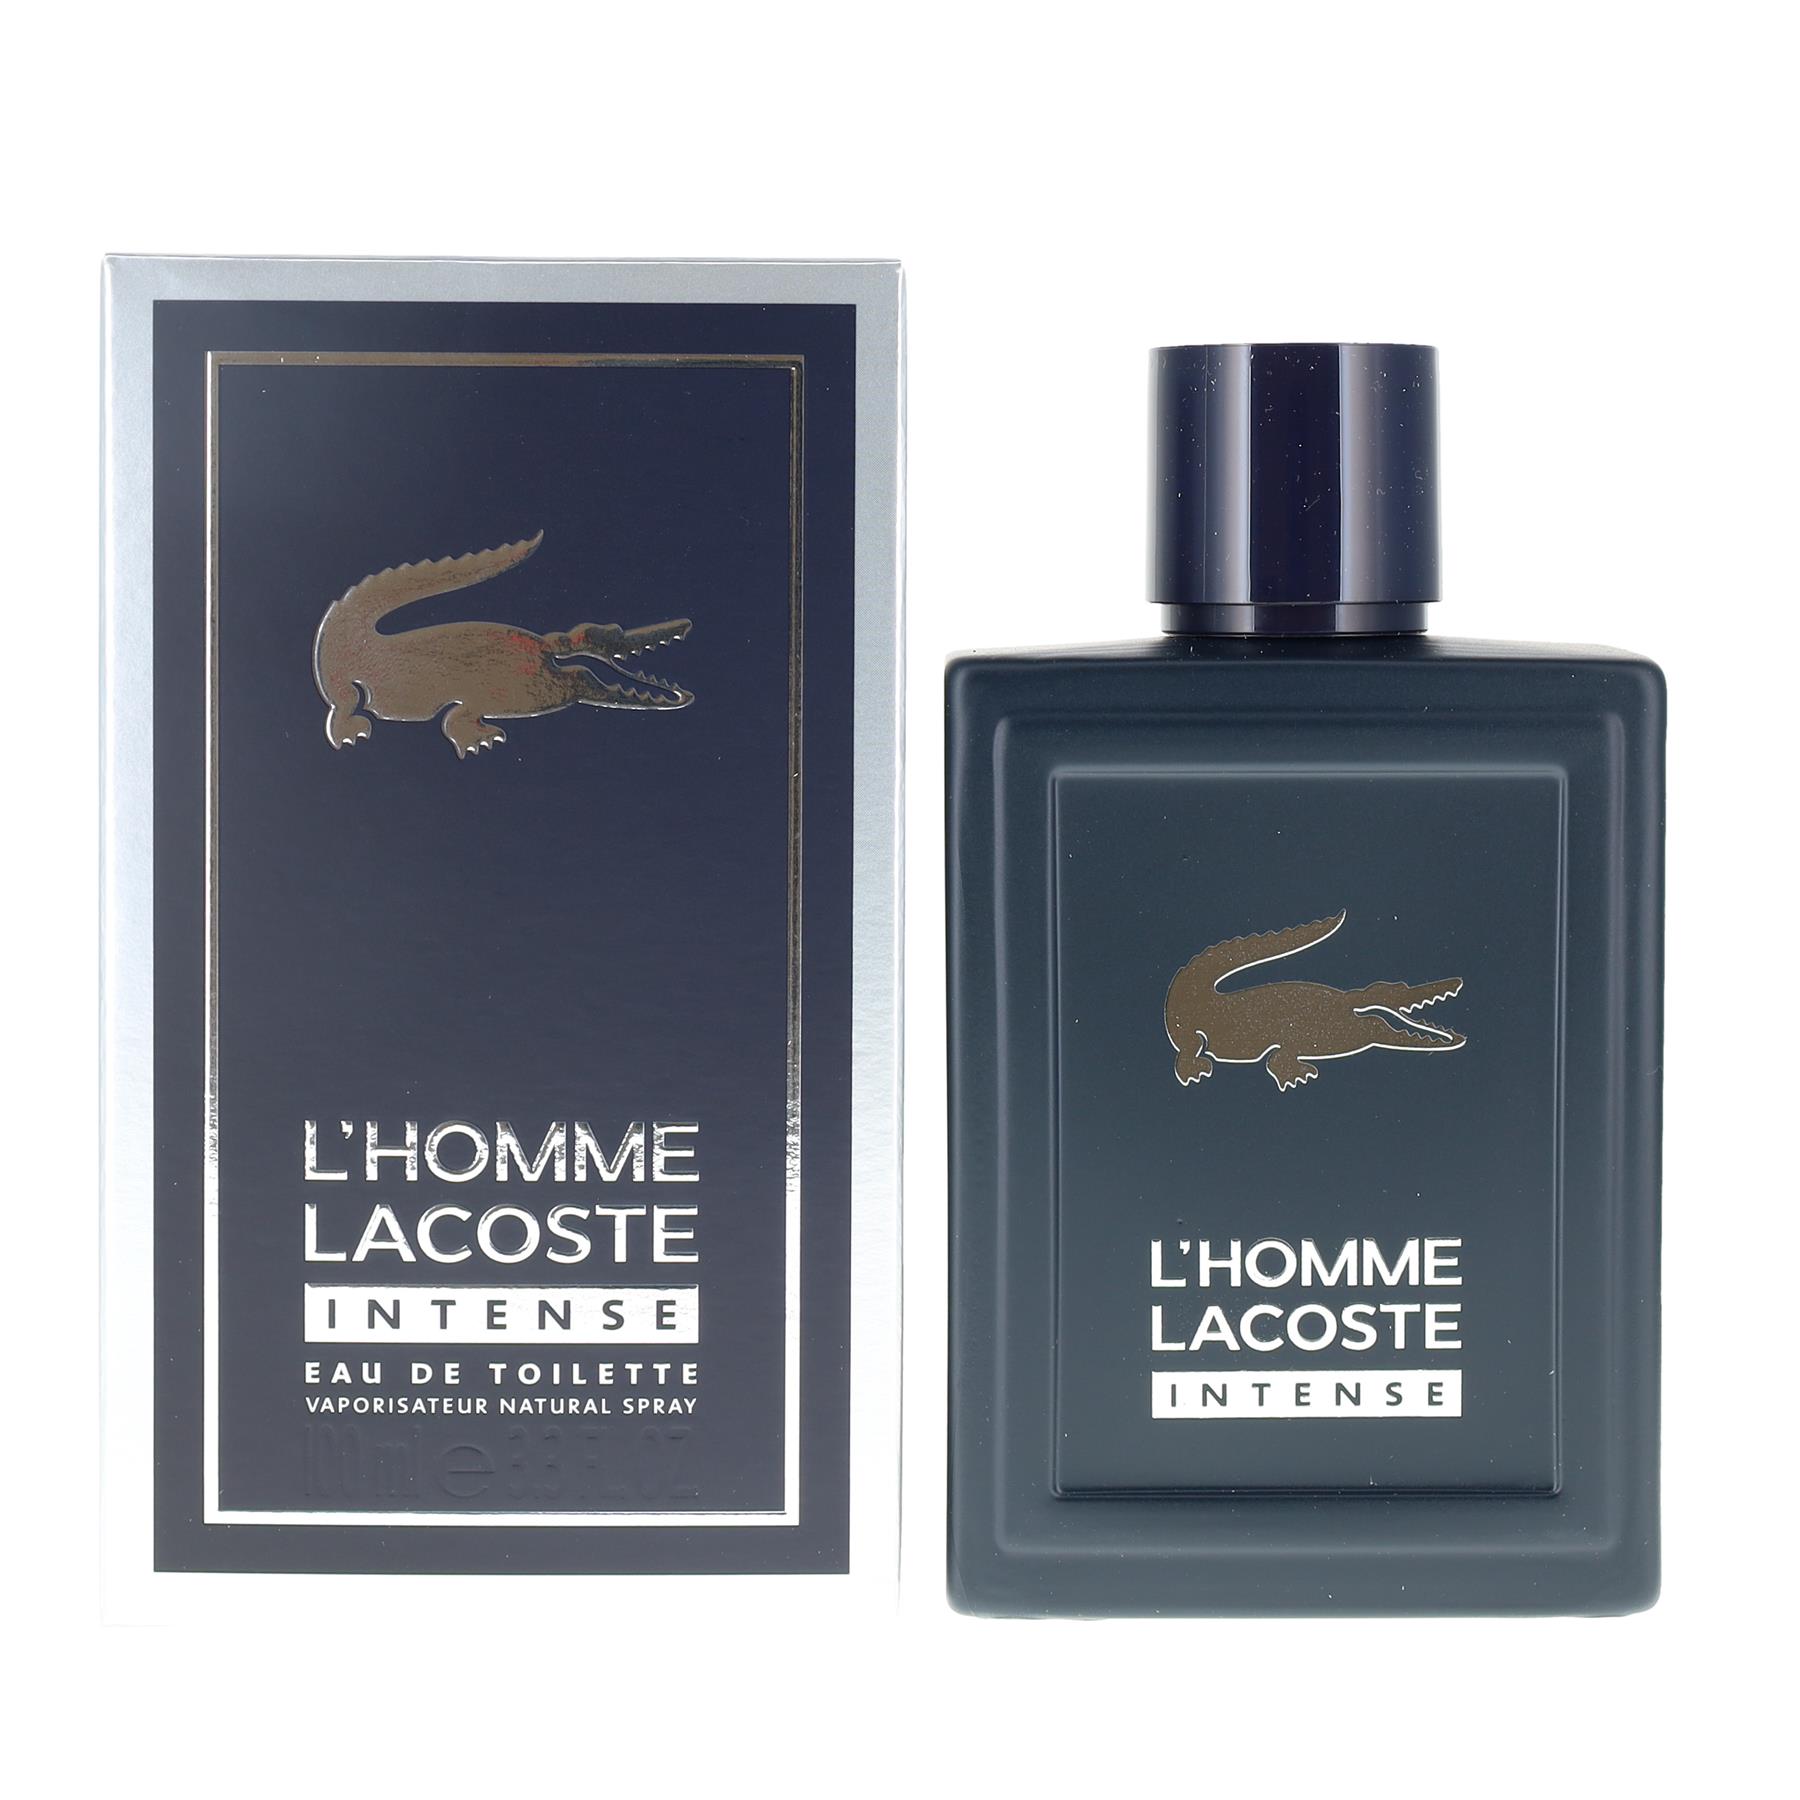 Lacoste L'Homme Intense 100ml Eau de Toilette Spray for Him from Perfume Plus Direct